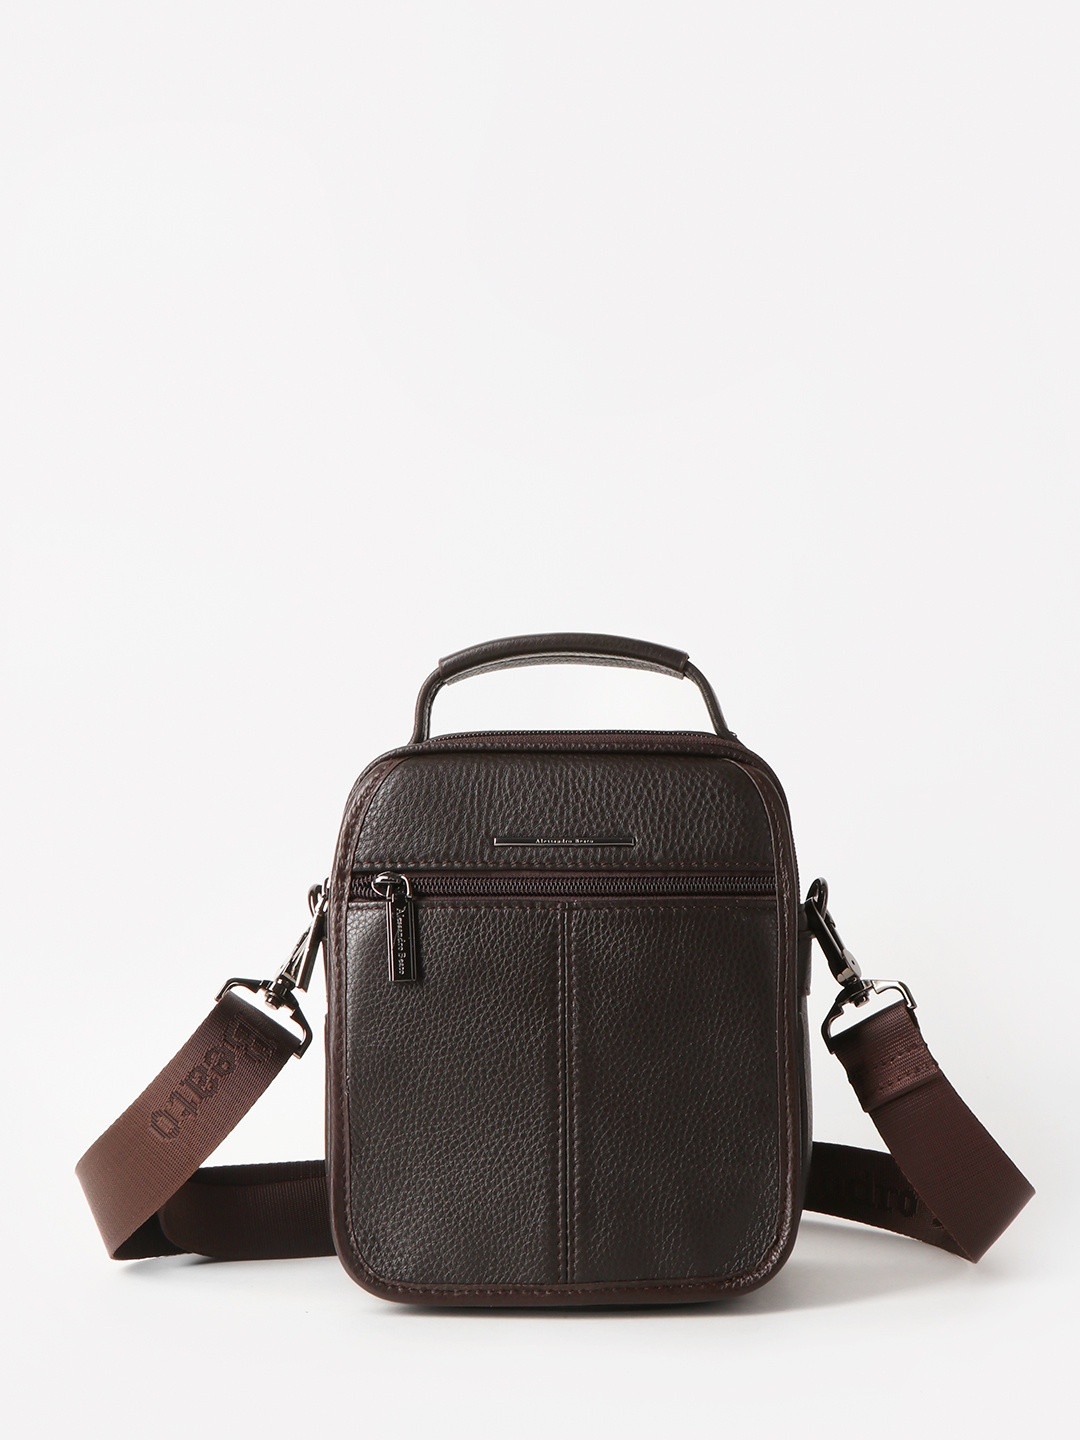 Фото Мужская сумка барсетка из натуральной кожи коричневого цвета Сумки через плечо